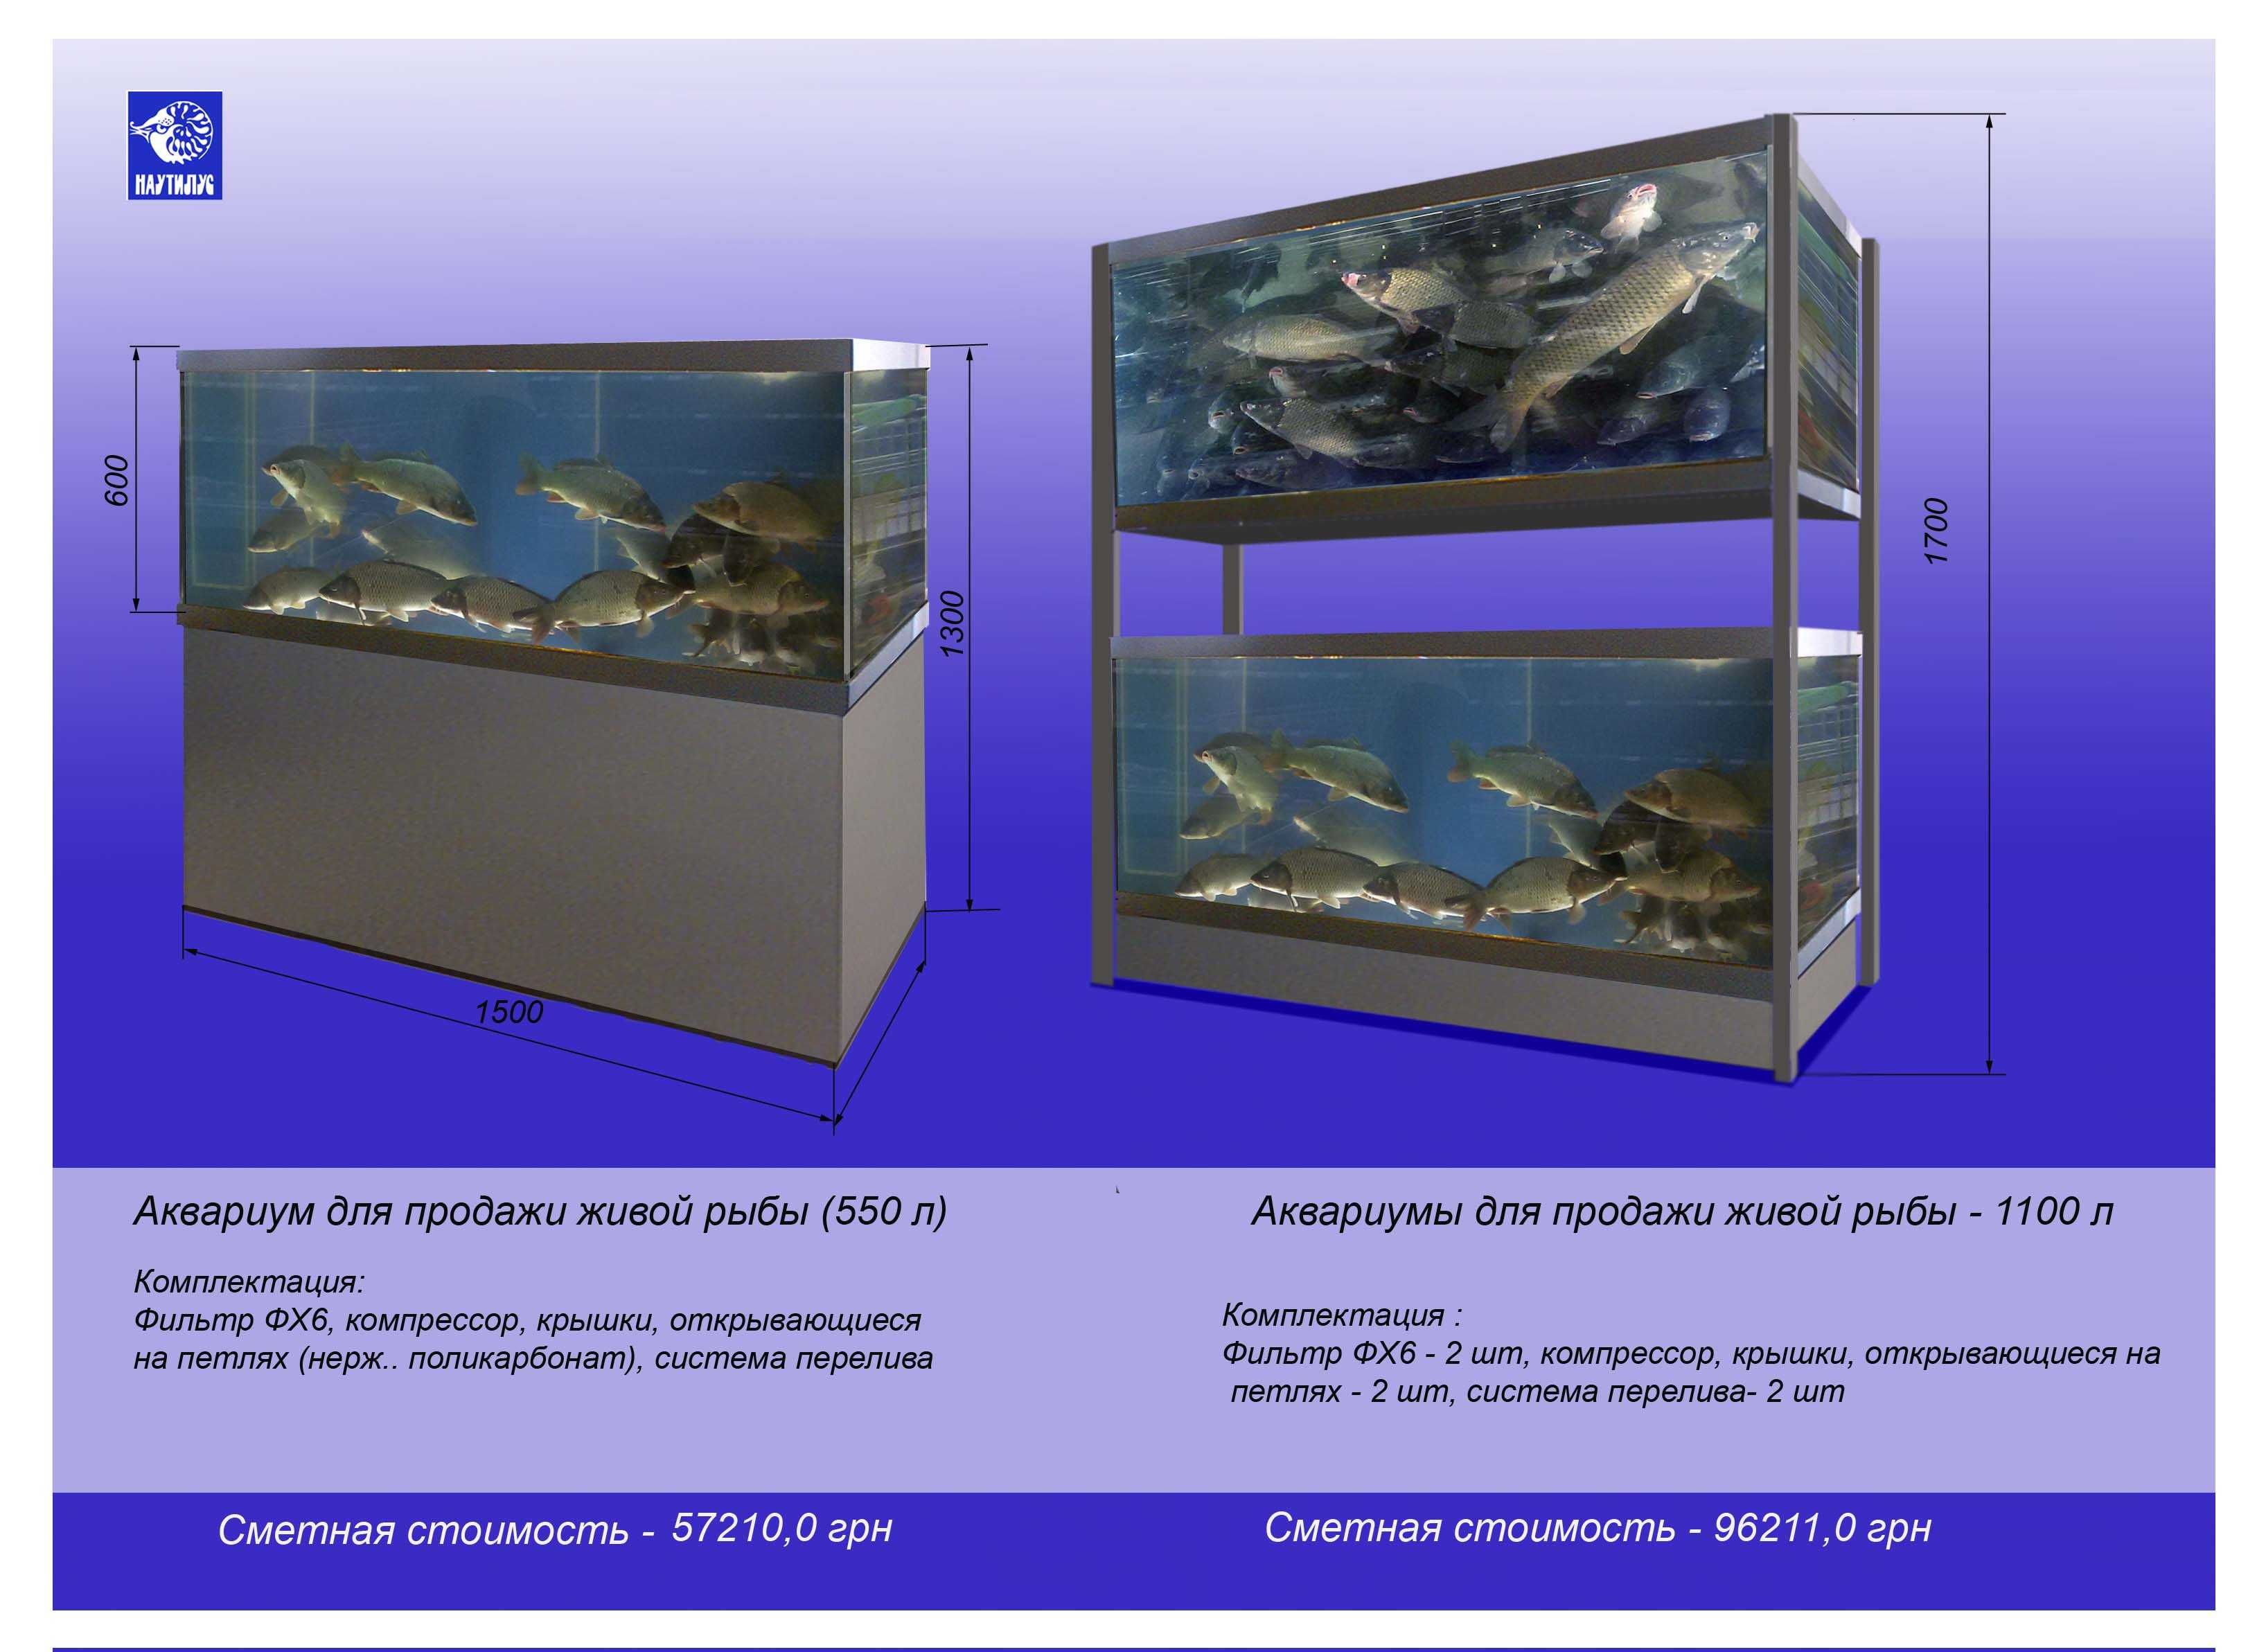 Продам аквариум для продажи живой рыбы 550 литров